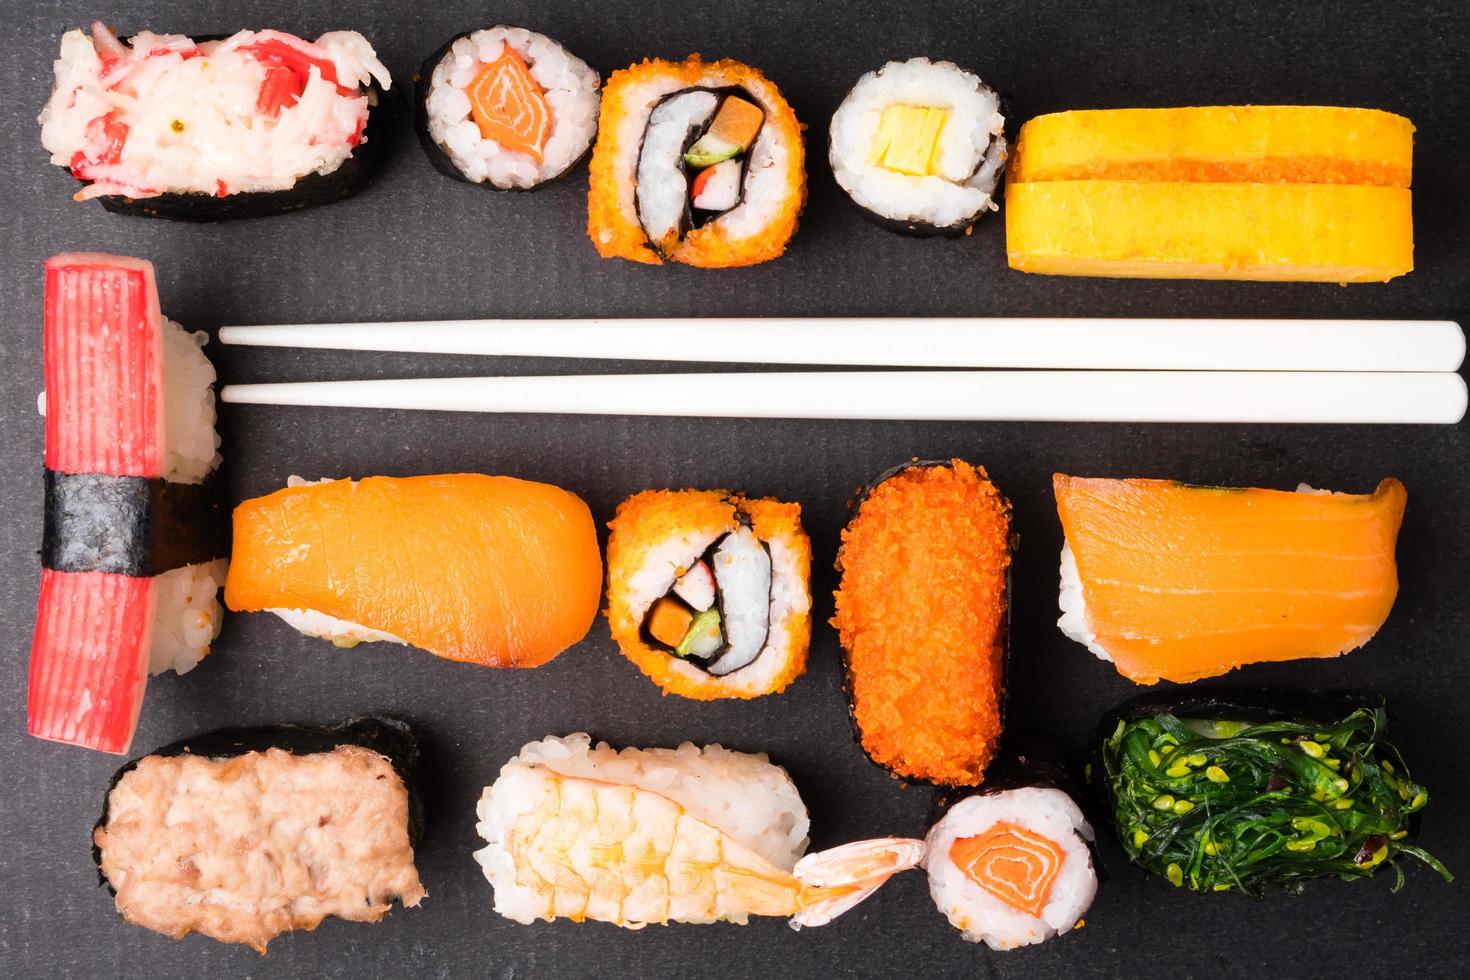 vue de dessus du jeu de sushis et des baguettes sur fond noir, cuisine japonaise. photo